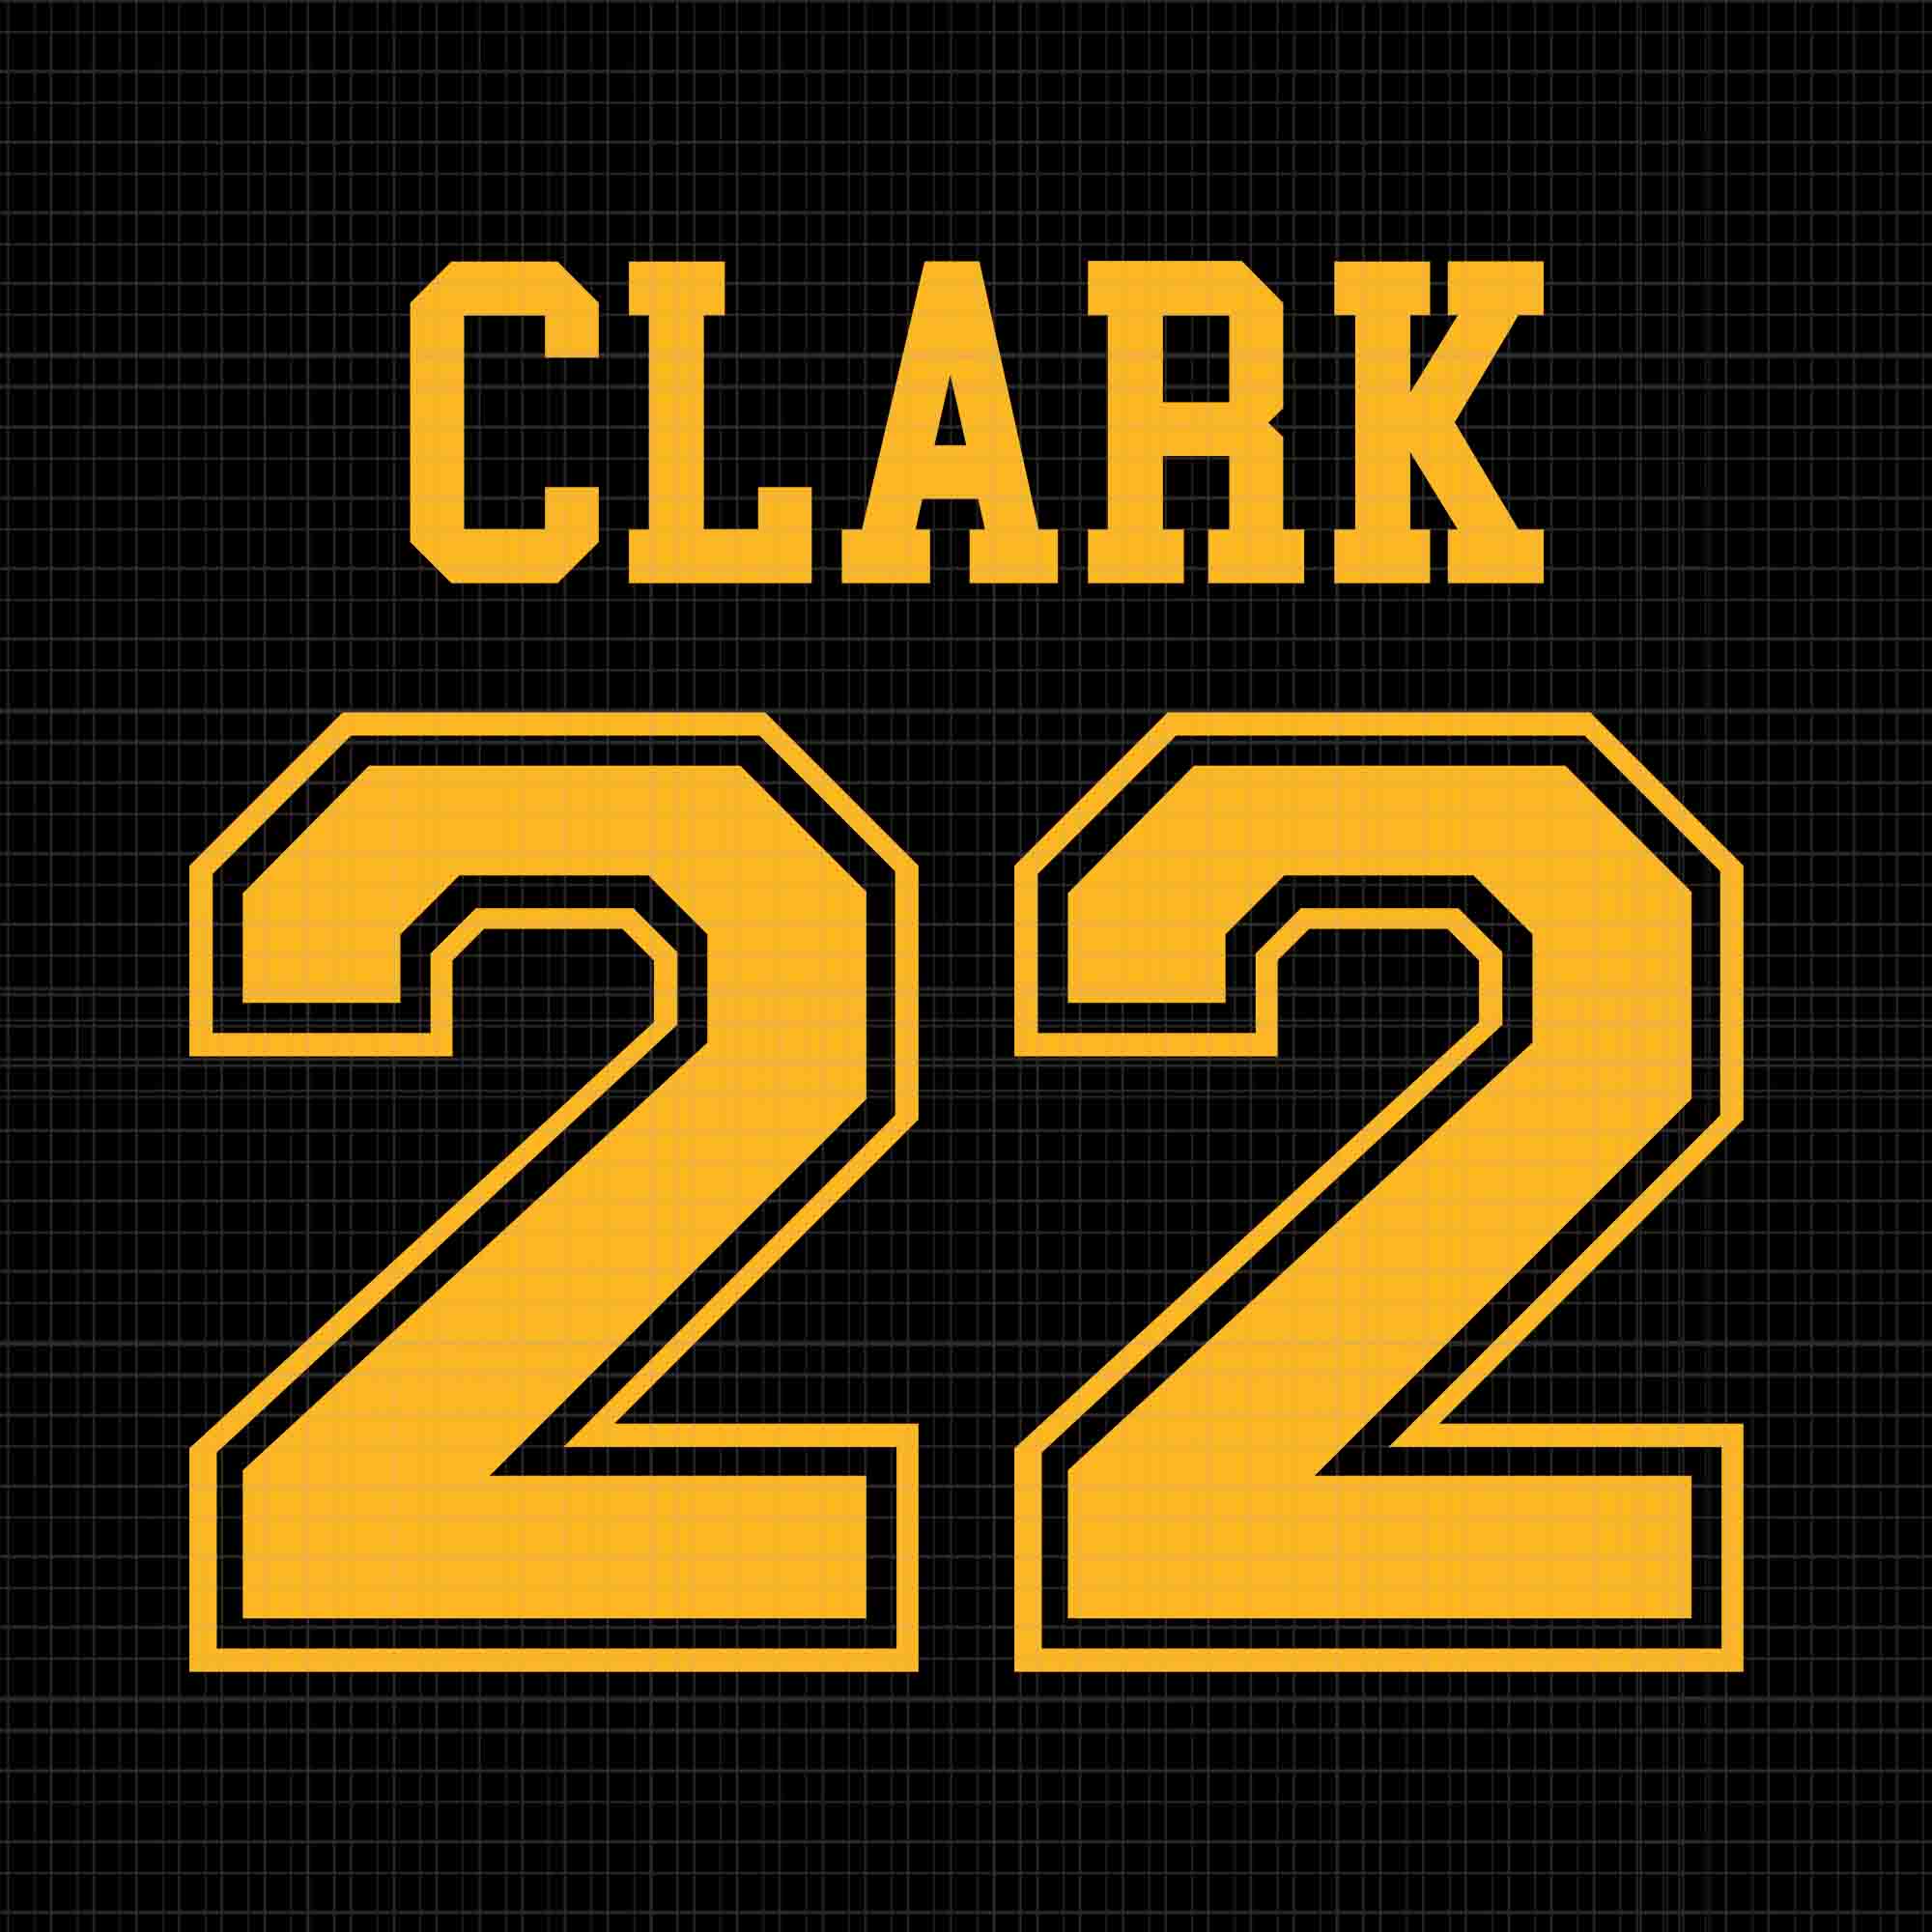 Caitlin Clark Svg, Clark 22 Lowa Svg, Clark And Clark Basketball Svg, Caitlin Clark 22 Svg